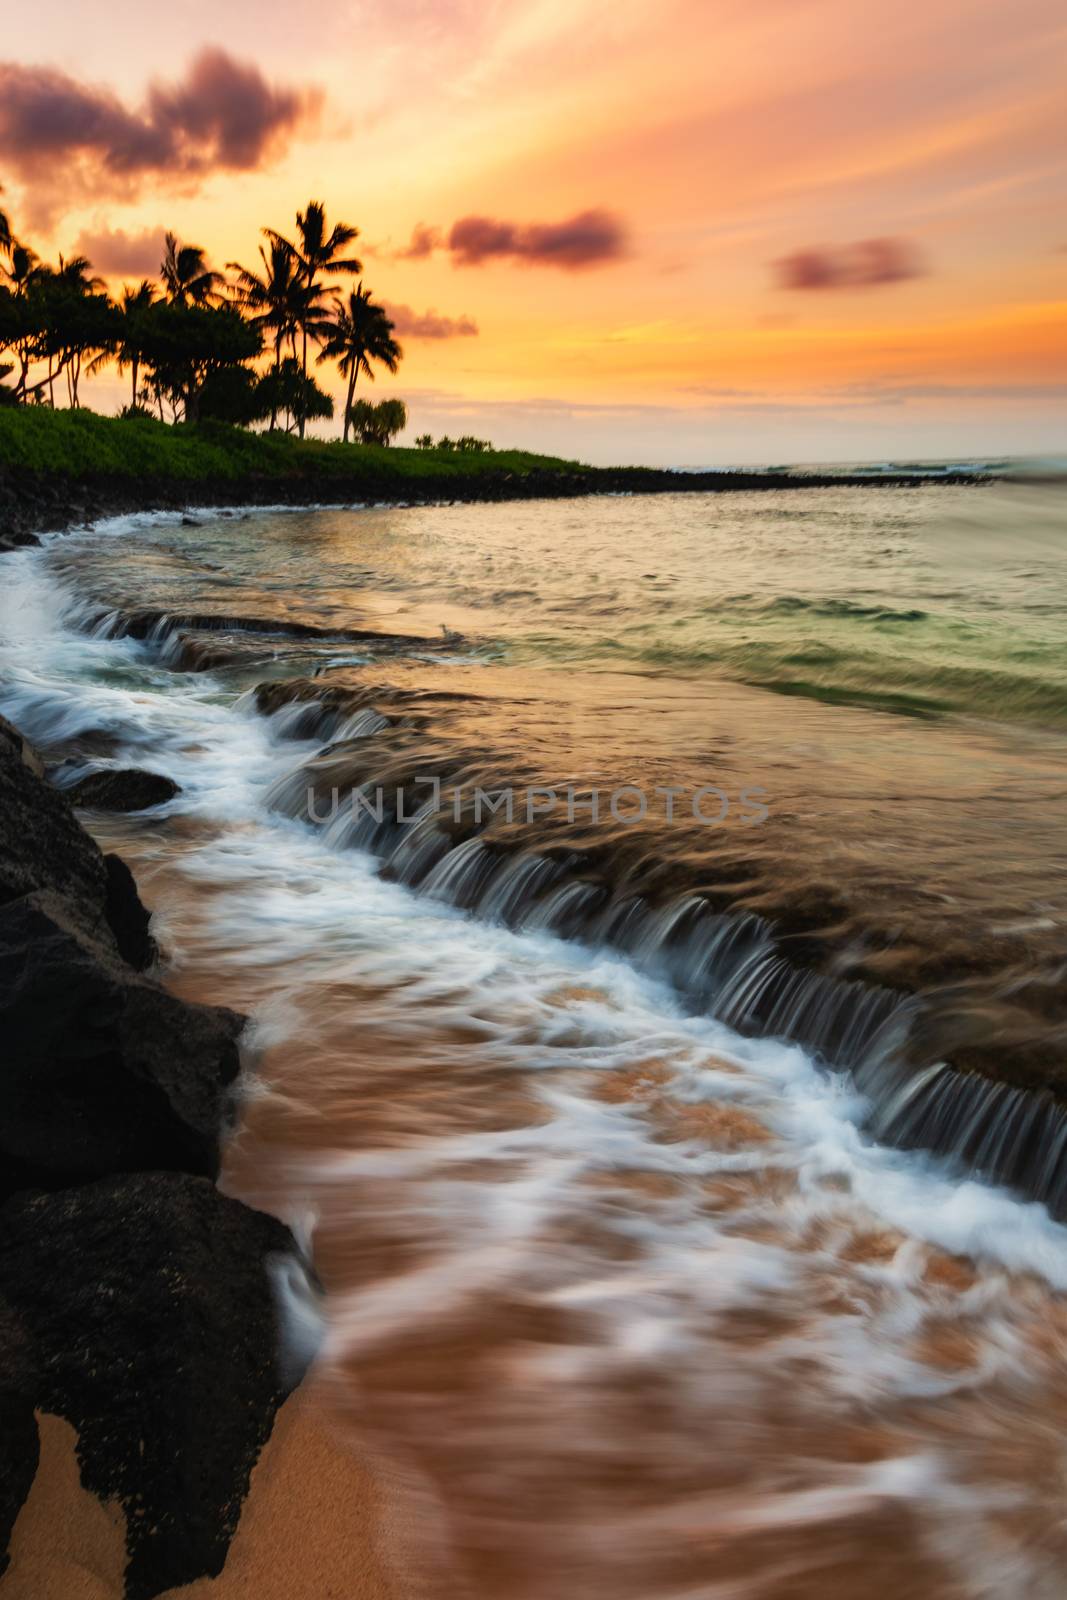 Sunrise in Hawaii by backyard_photography